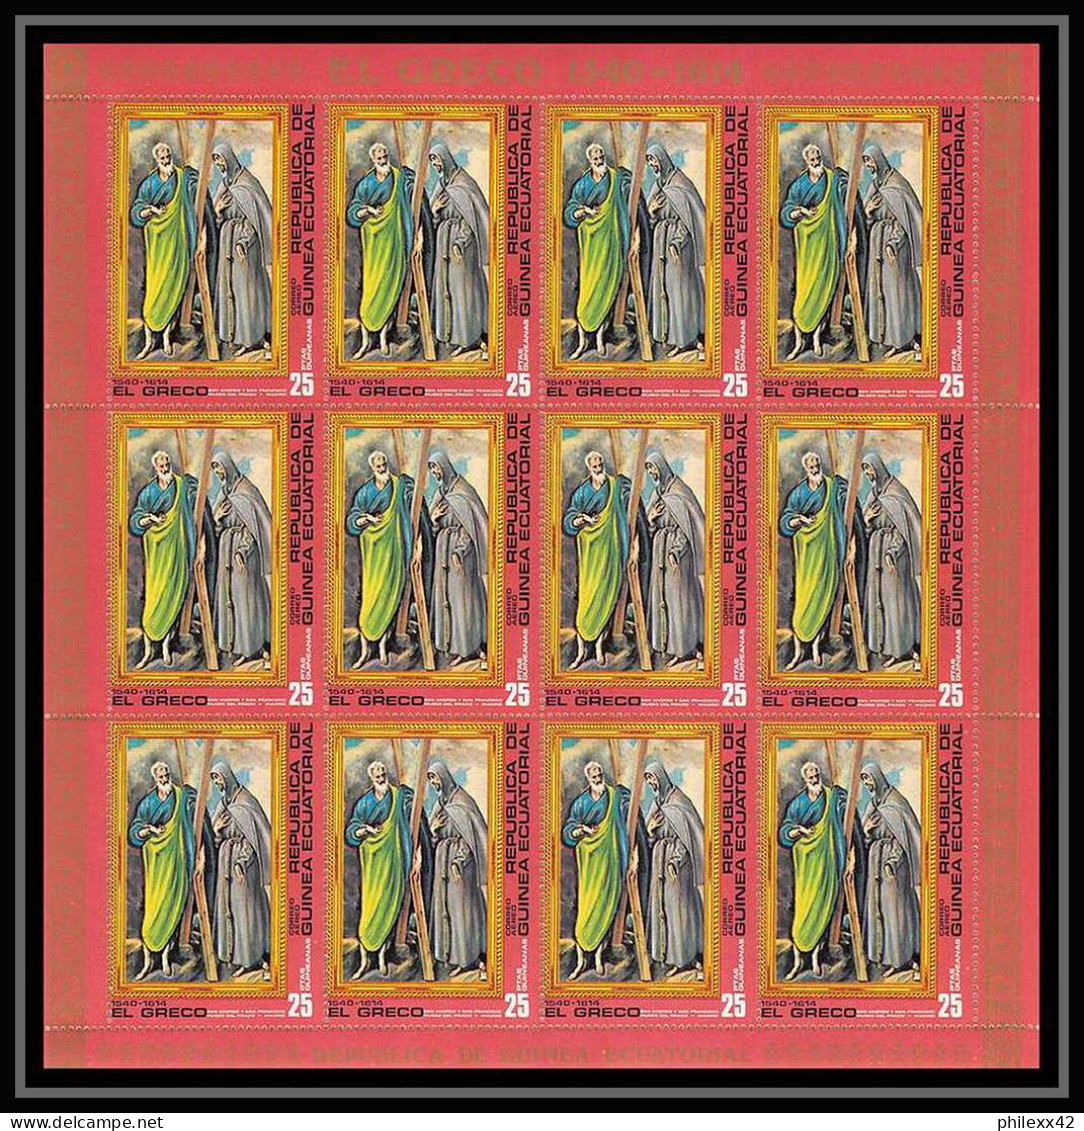 60002 neuf ** MNH N°813/819 El Greco Tableau Painting 1976 Guinée équatoriale guinea feuilles sheets